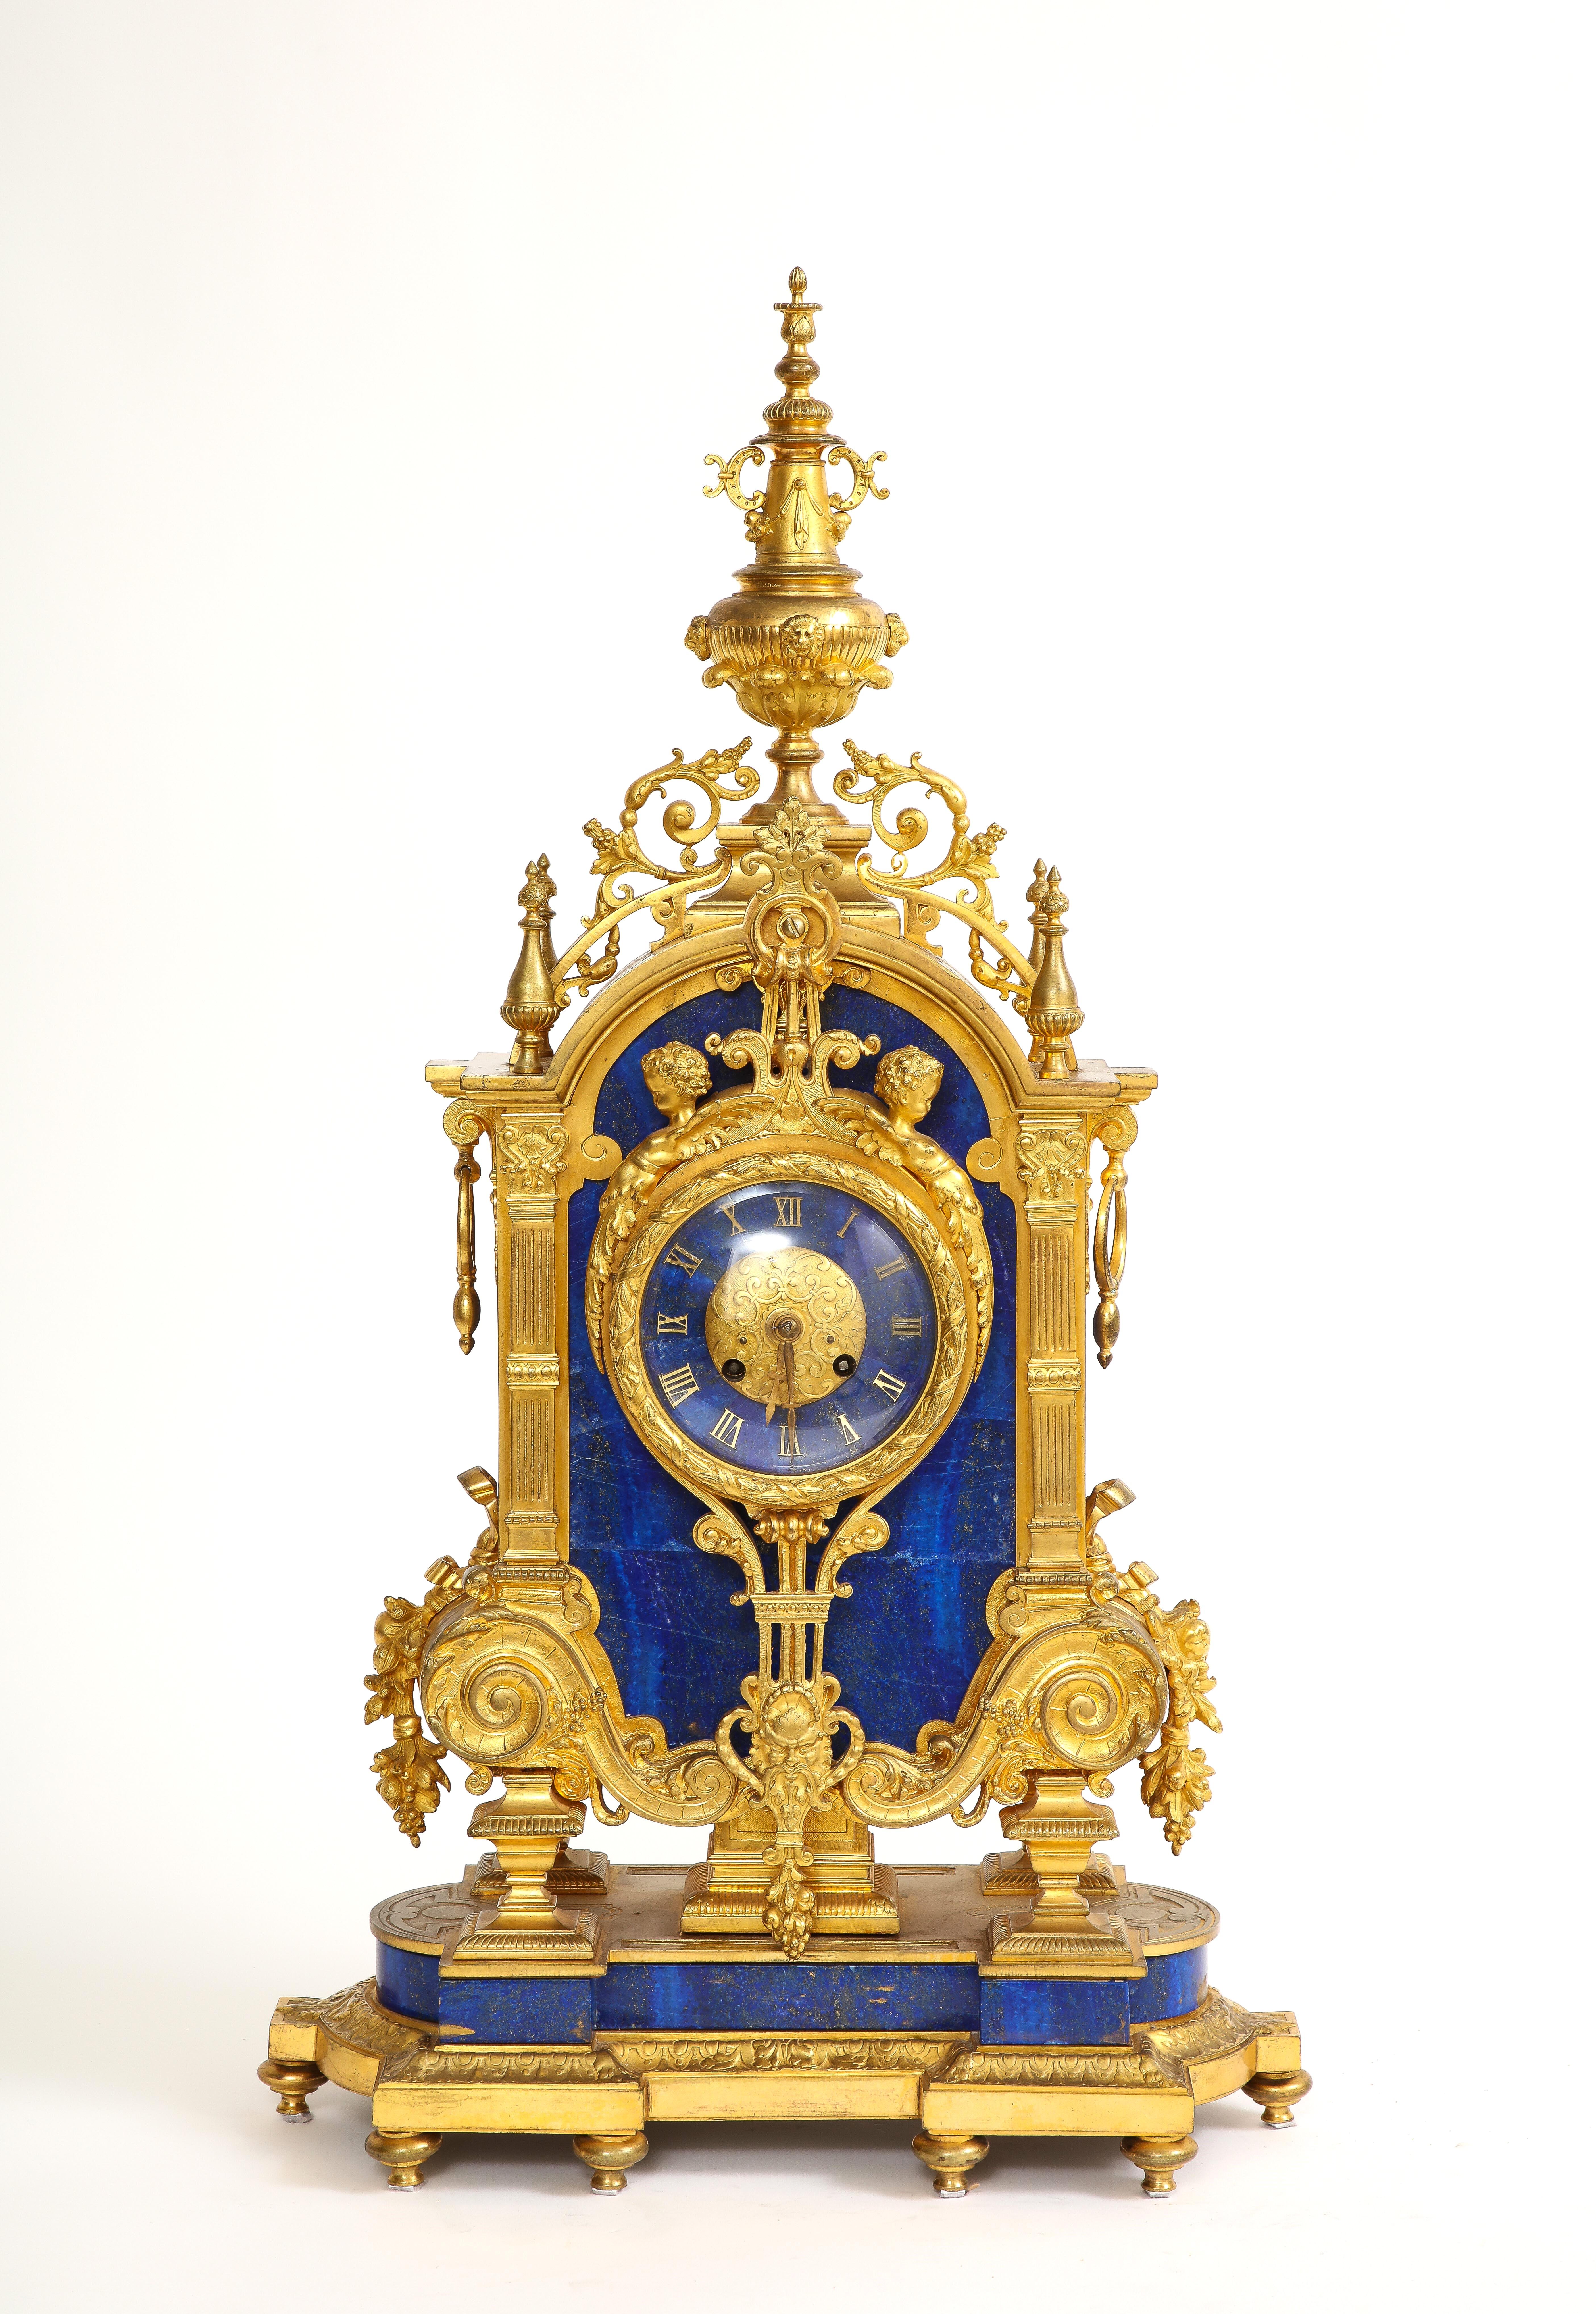 Eine unglaubliche und ziemlich seltene 19. Jahrhundert Französisch Lapislazuli Louis XVI Stil Ormolu Uhr.  Es handelt sich um ein beeindruckendes Stück dekorativer Kunst, das den luxuriösen Geschmack der französischen Monarchie des 18. Jahrhunderts